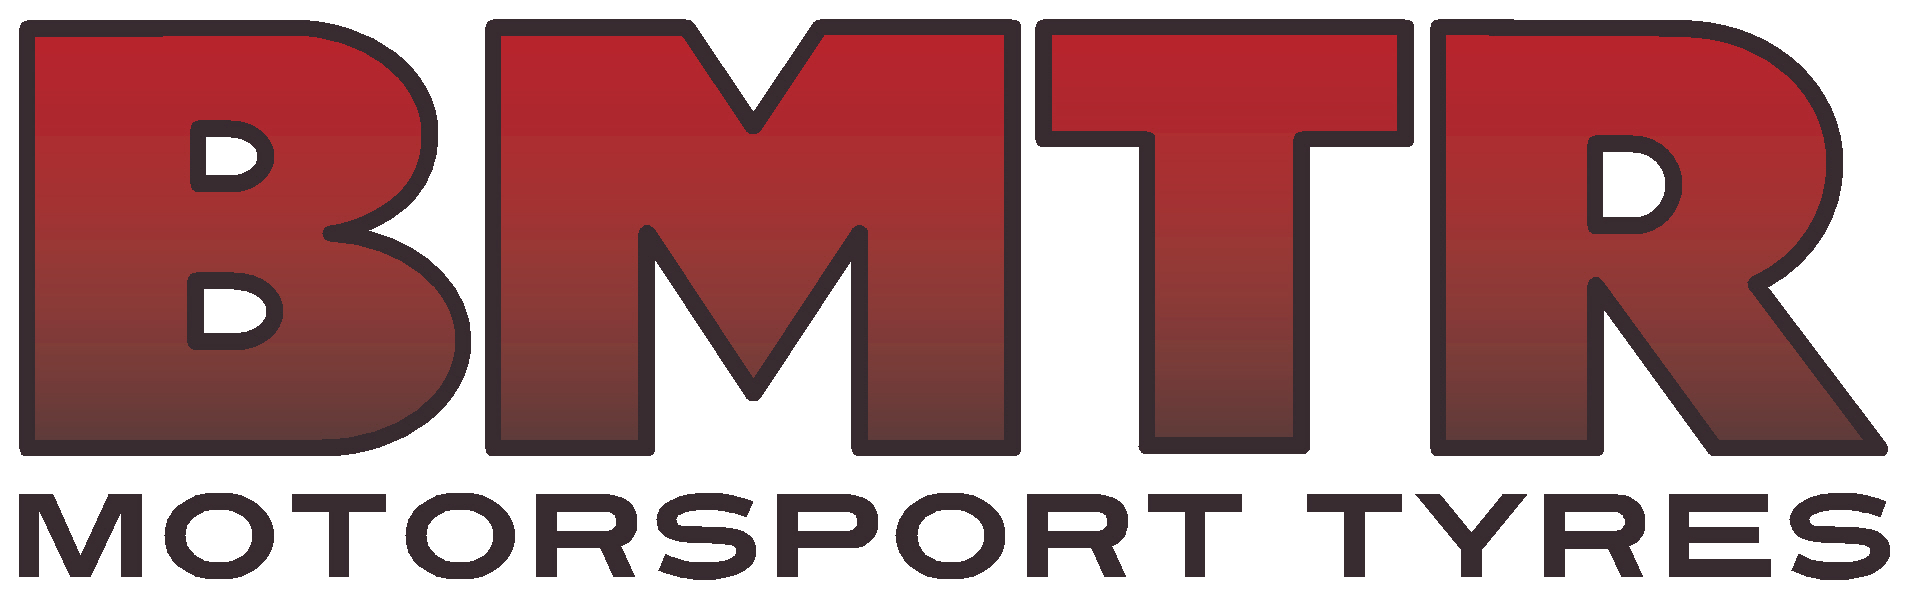 bmtr logo